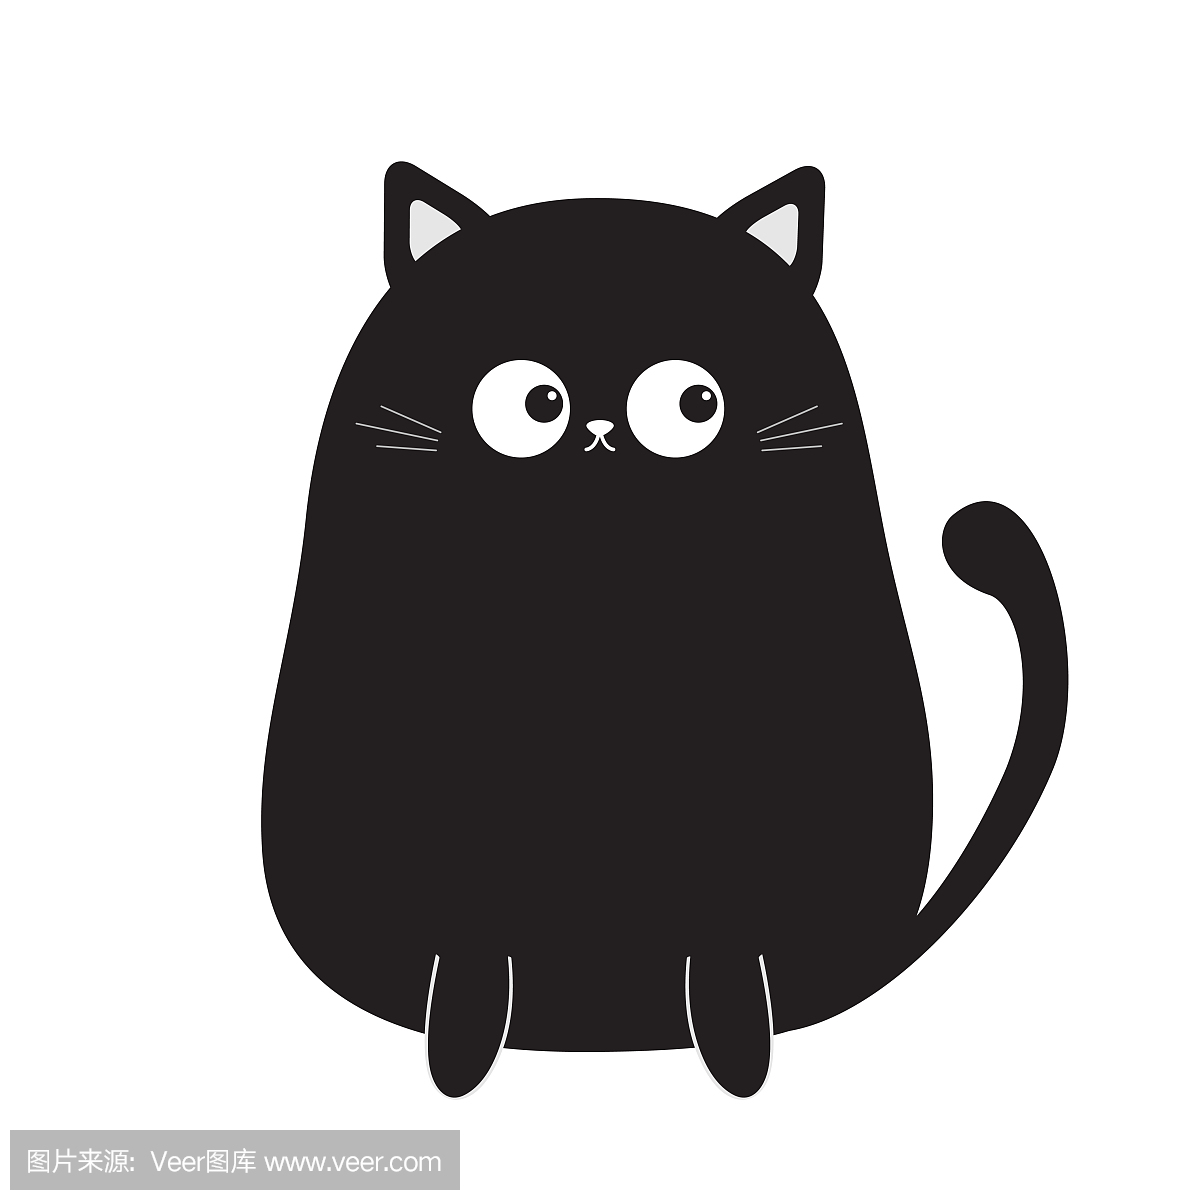 卡通黑貓圖案素材 | PNG和向量圖 | 透明背景圖片 | 免費下载 - Pngtree